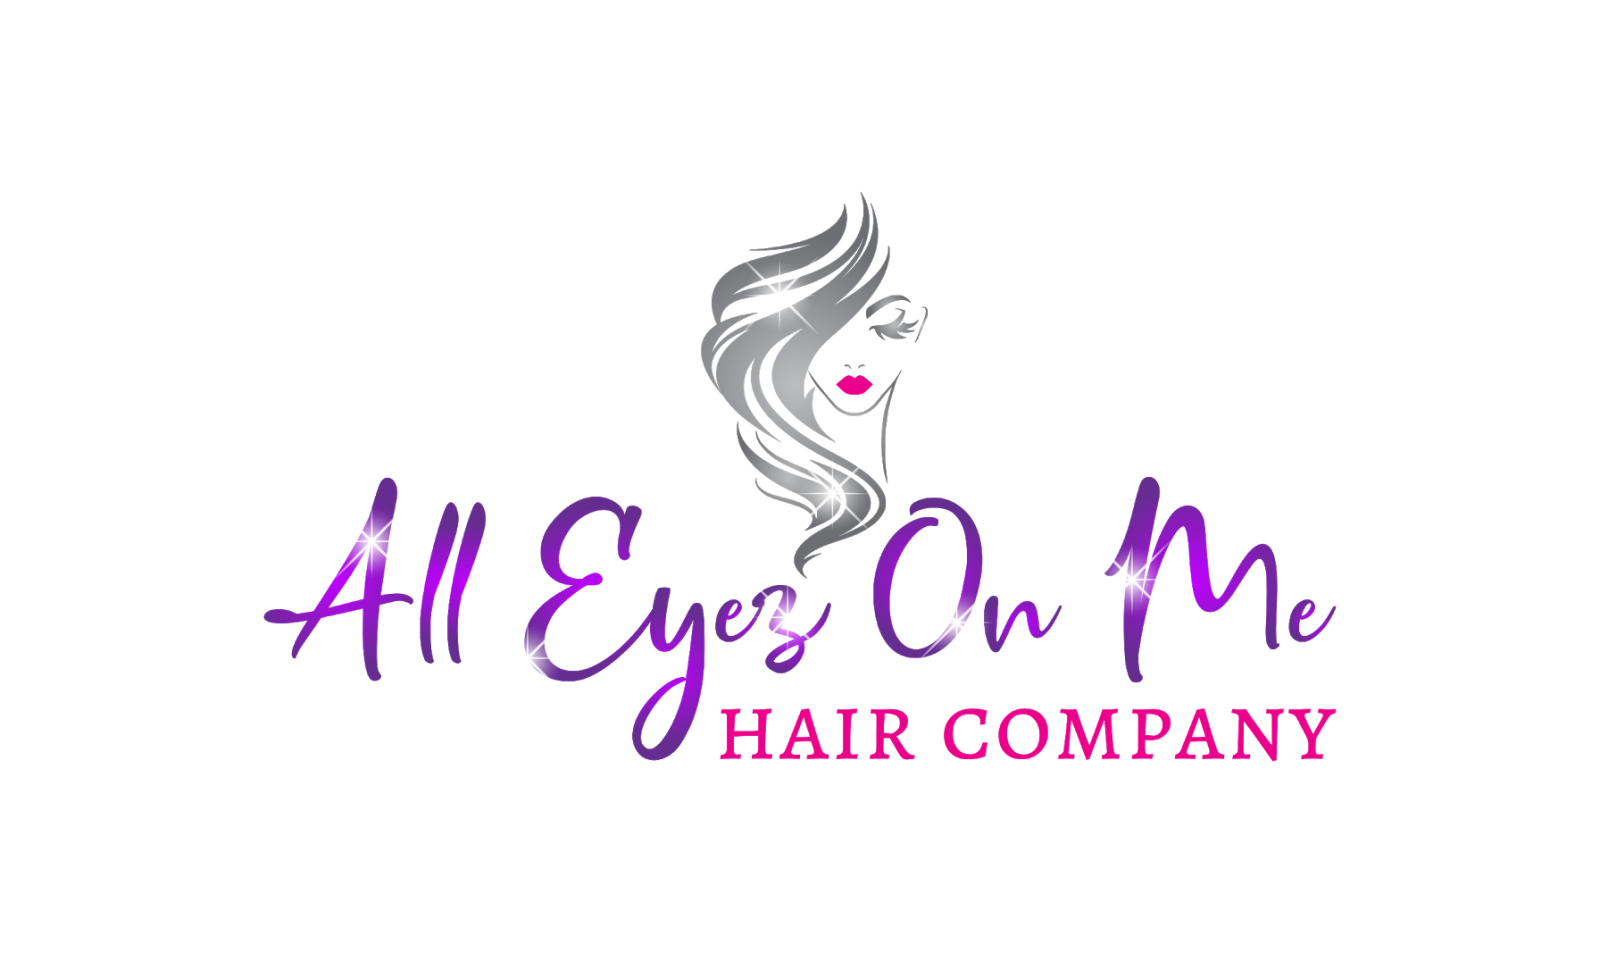 All Eyez On Me Hair Company